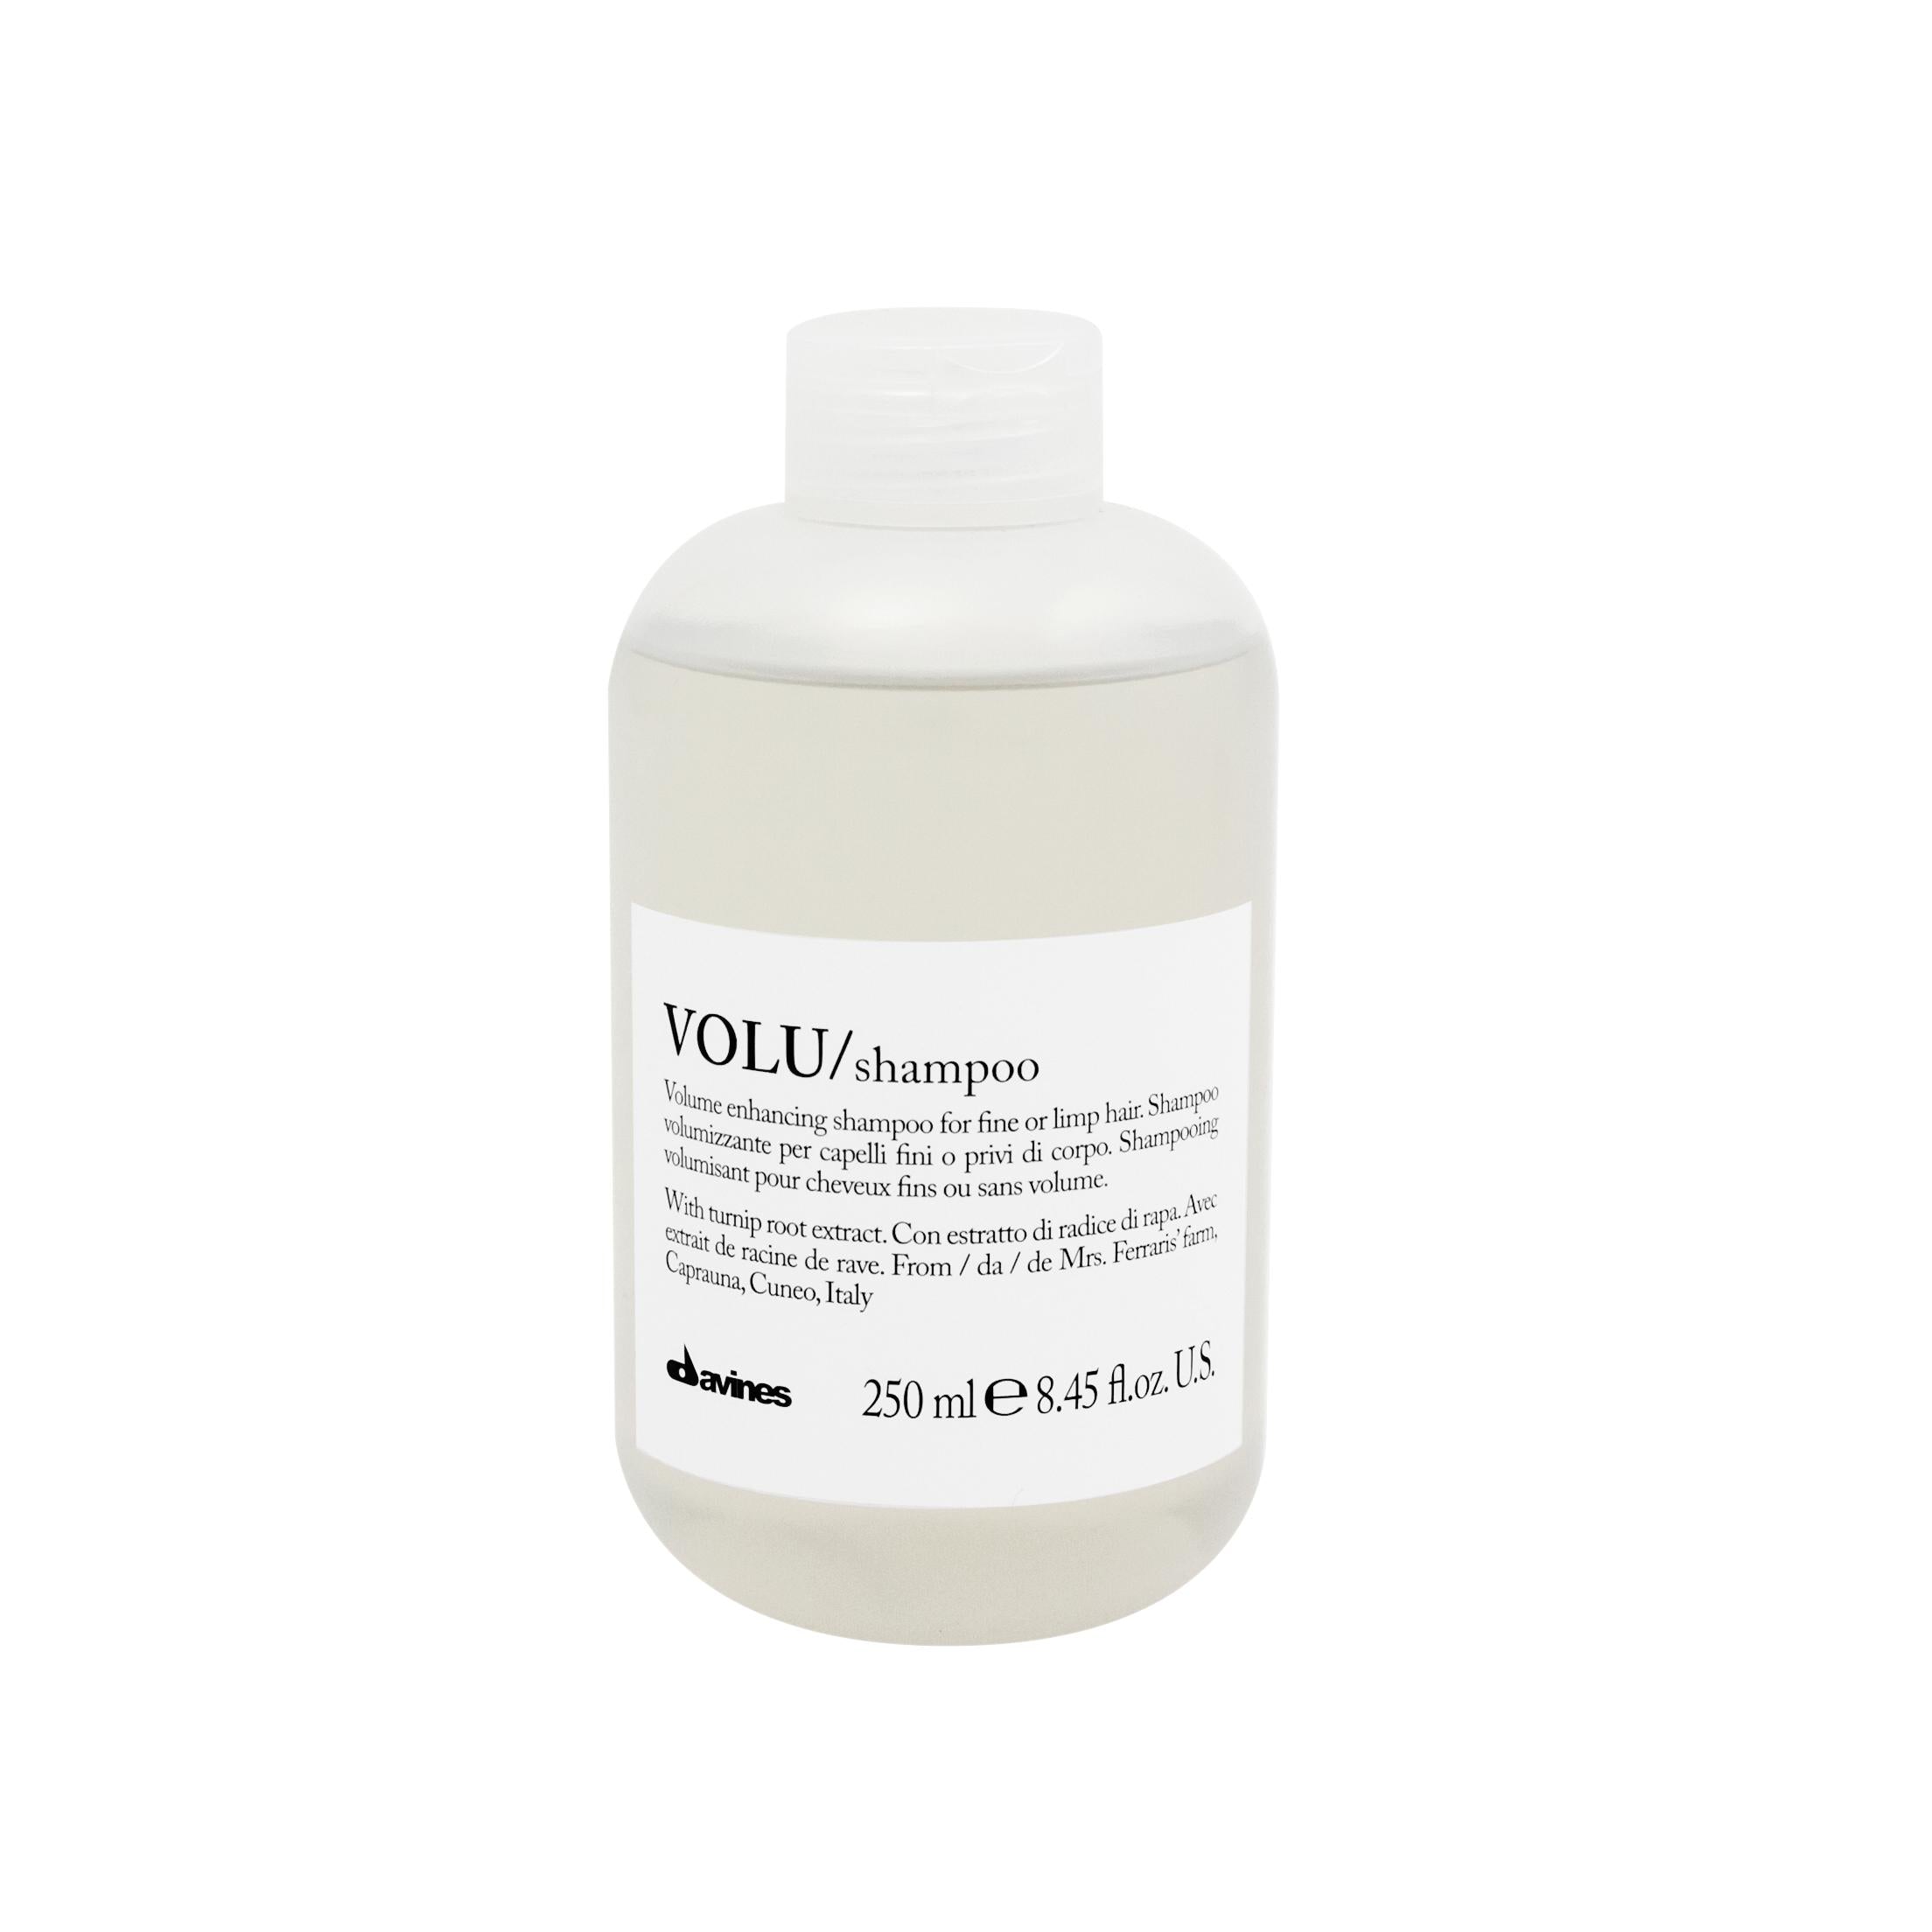 VOLU Shampoo 250ml-Shampoo-Luxury Haircare Company